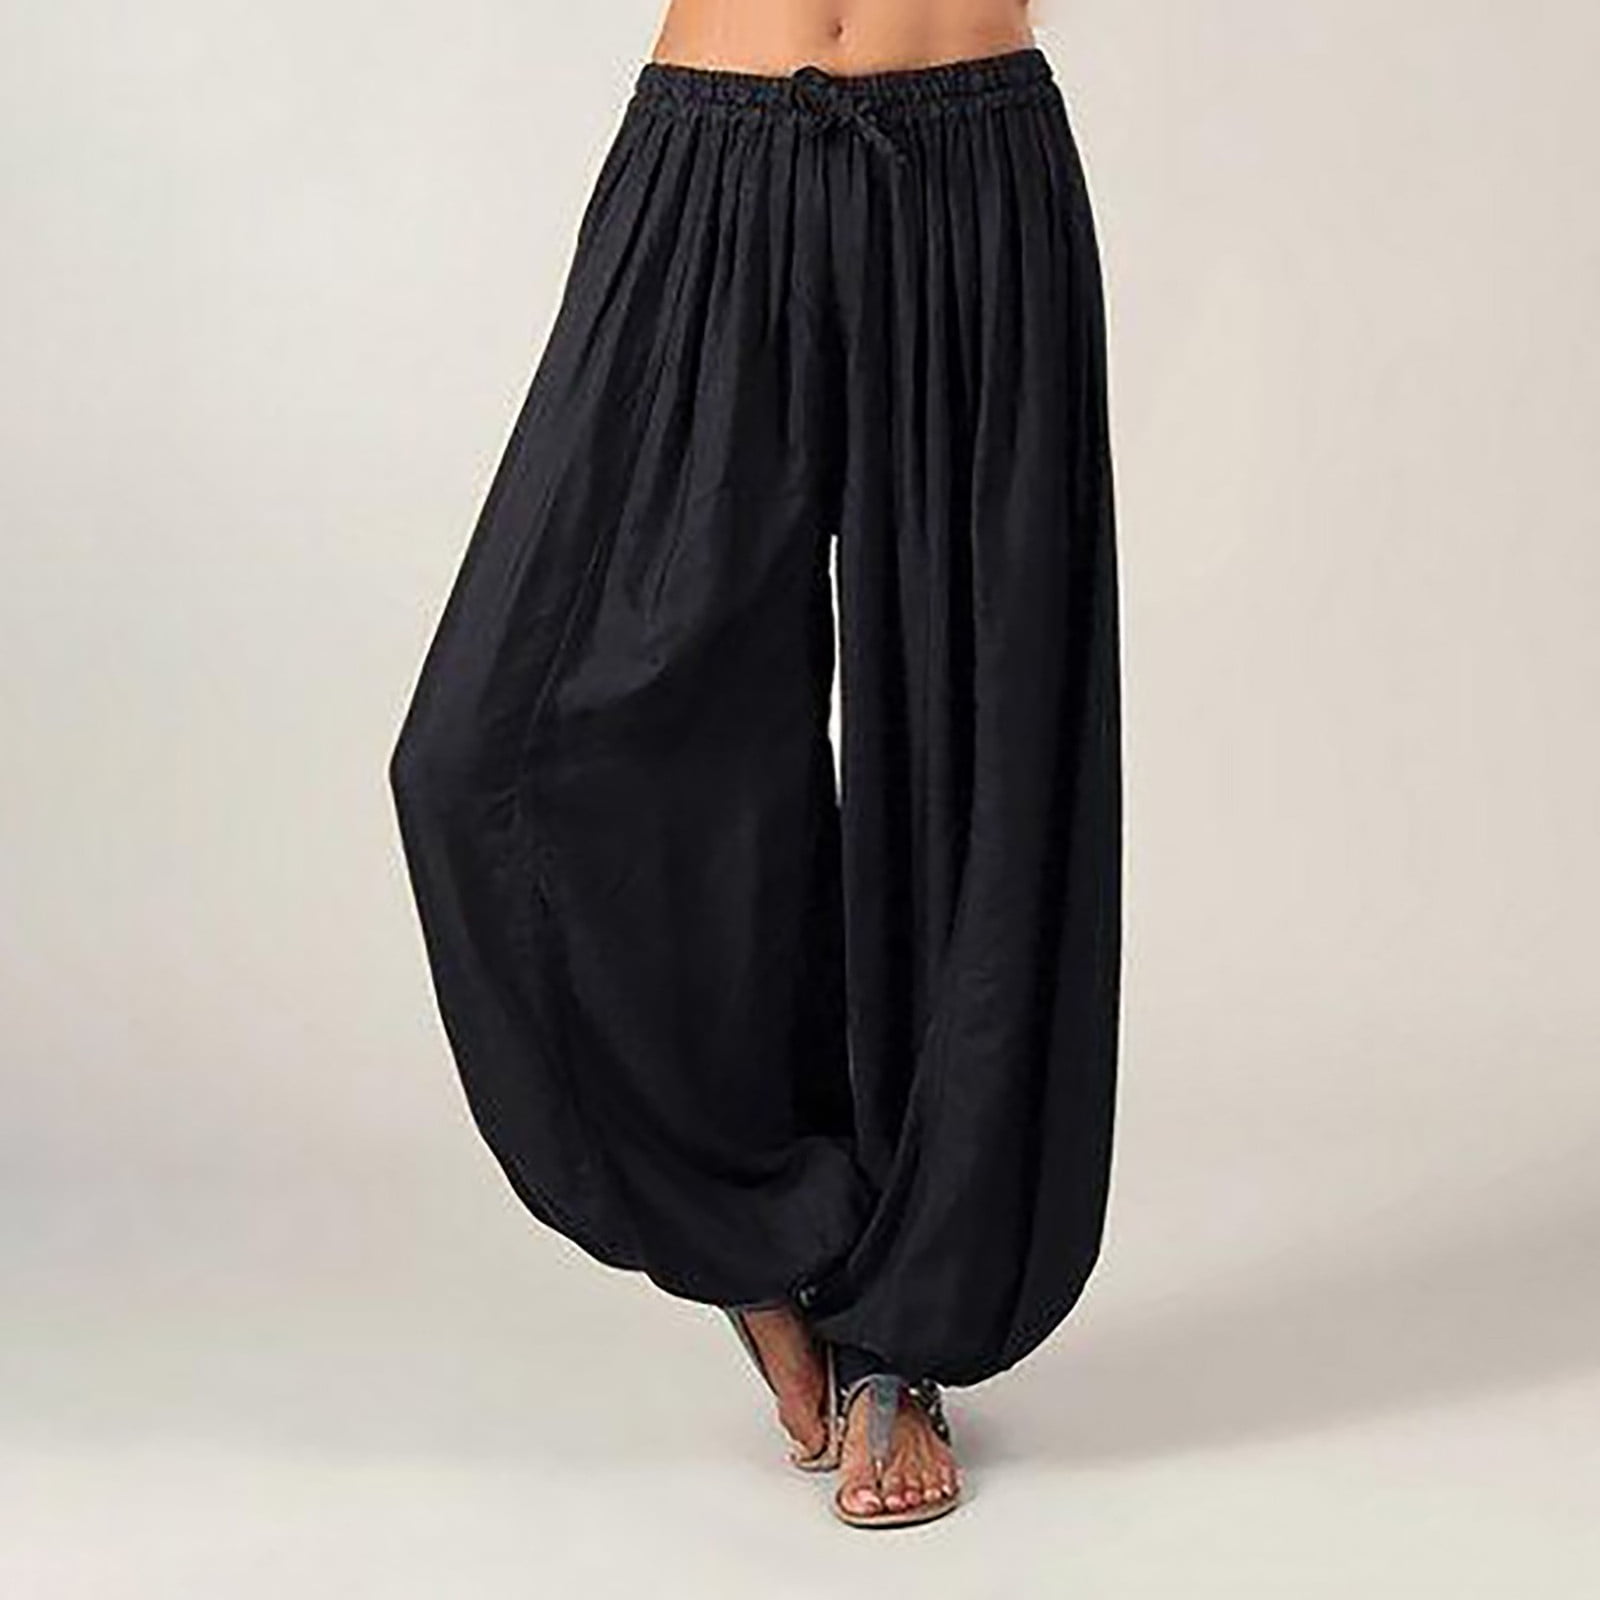 Pxiakgy pants for women Women Plus Size Solid Color Casual Loose Harem Yoga Pants Women Trousers Black + XL - Walmart.com